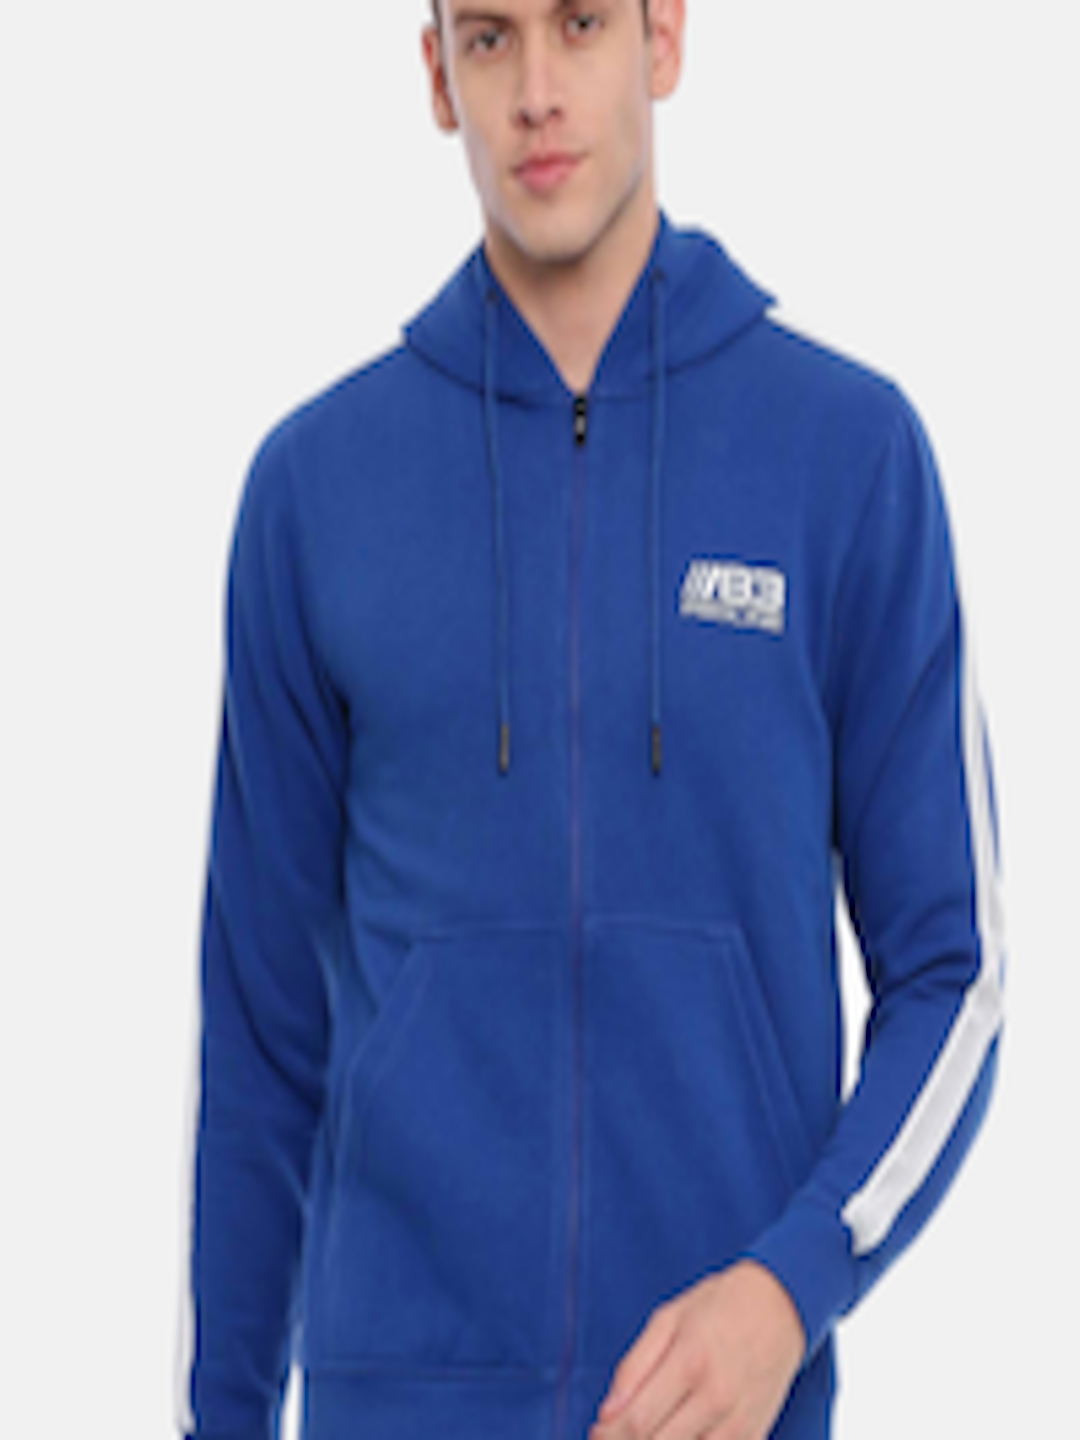 Buy Proline Active Men Blue Solid Hooded Sweatshirt - Sweatshirts for ...